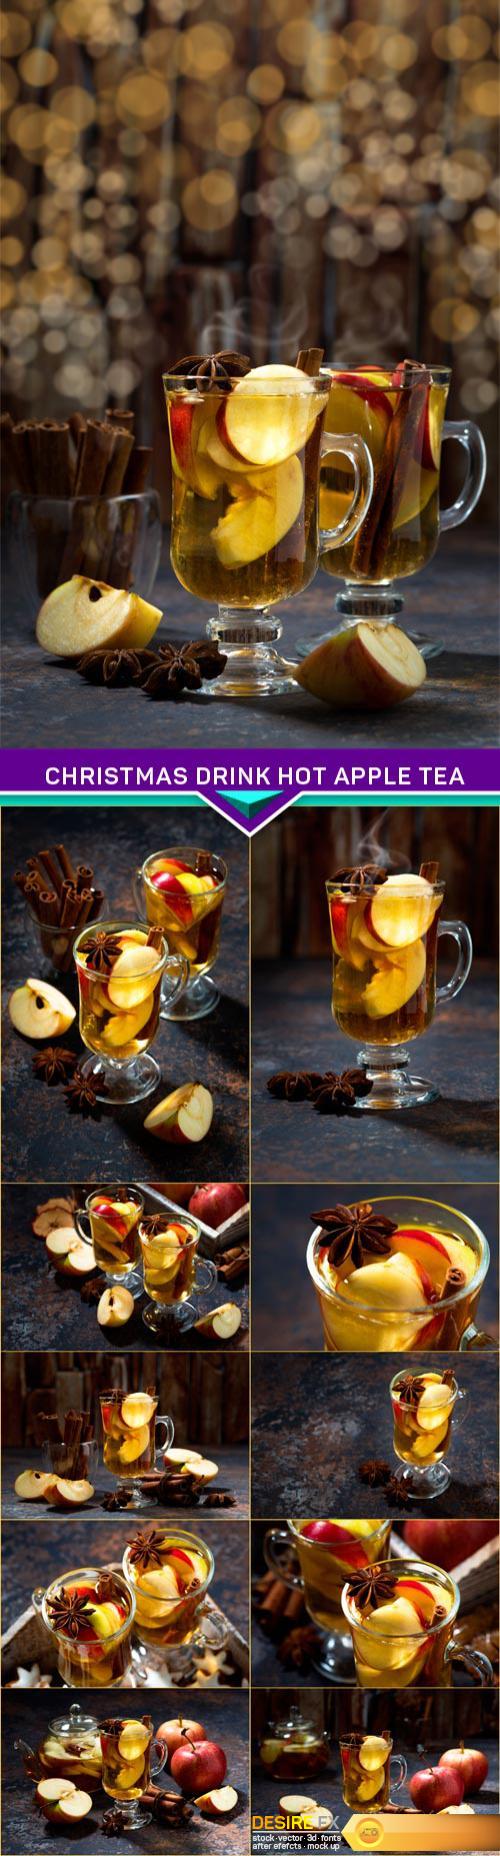 Christmas drink hot apple tea or cider and bokeh 11X JPEG